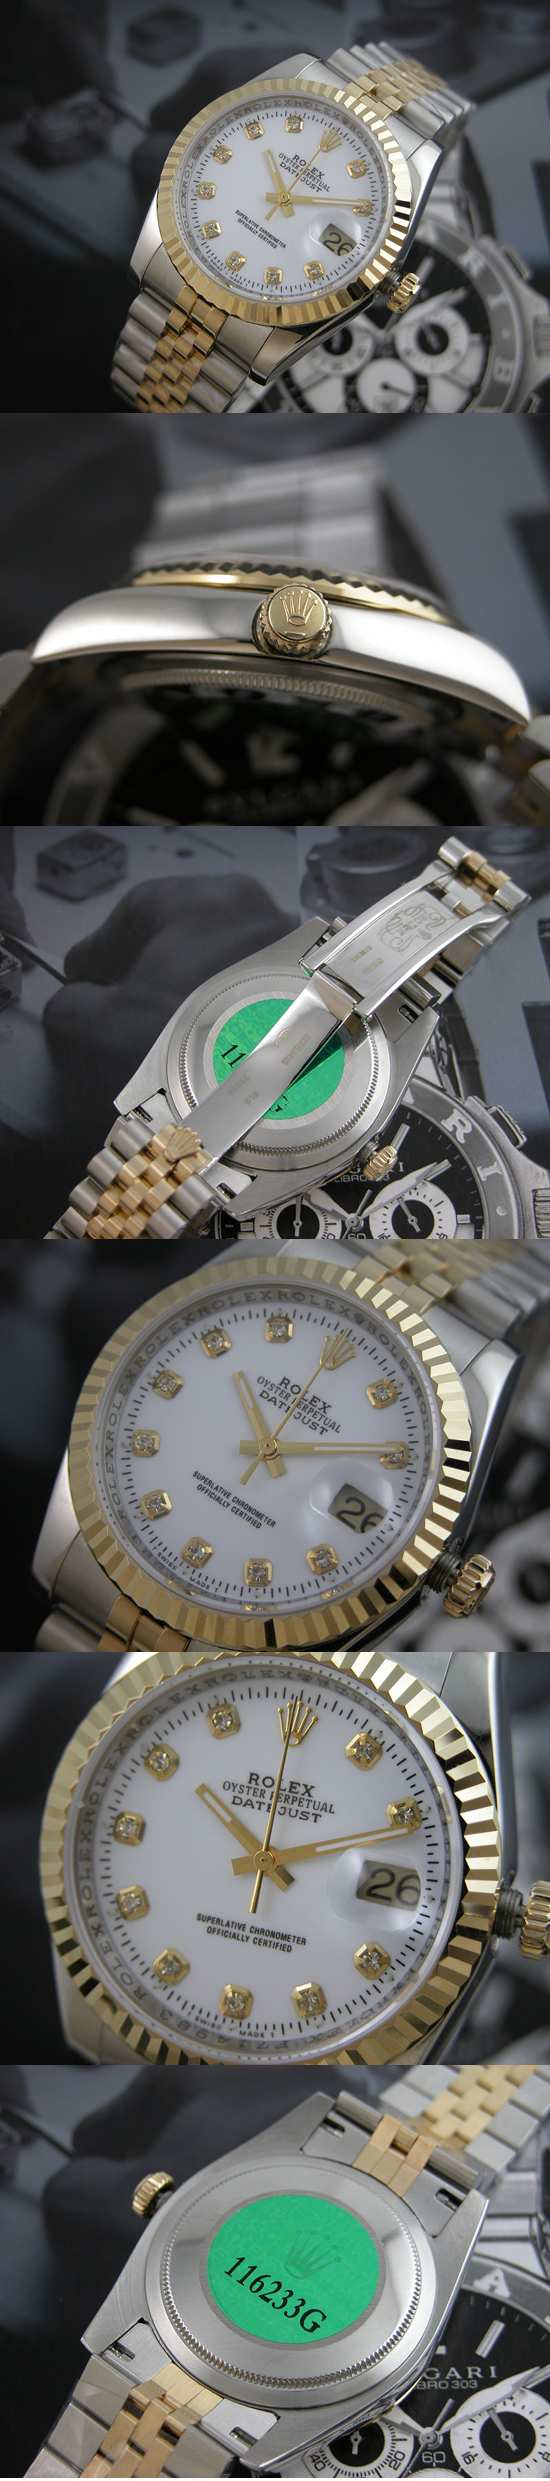 おしゃれなブランド時計がロレックス-デイトジャスト-ROLEX-116233G-136-男性用を提供します.